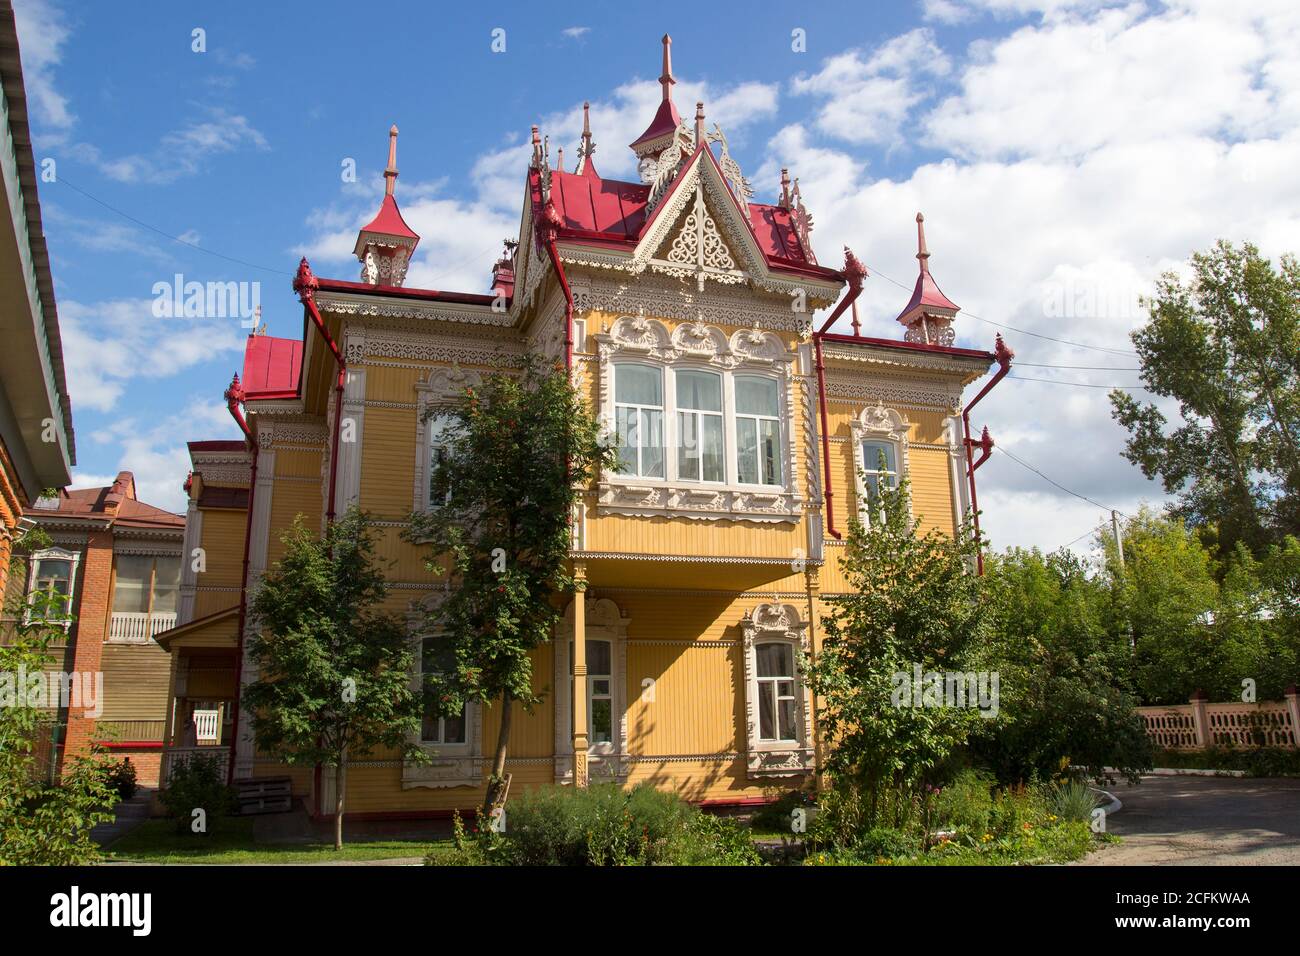 Russische Architektur. Haus mit feuervögeln, Holzhaus, Tomsk, Russland. Schöne geschnitzte Elemente der russischen nördlichen Architektur Stockfoto